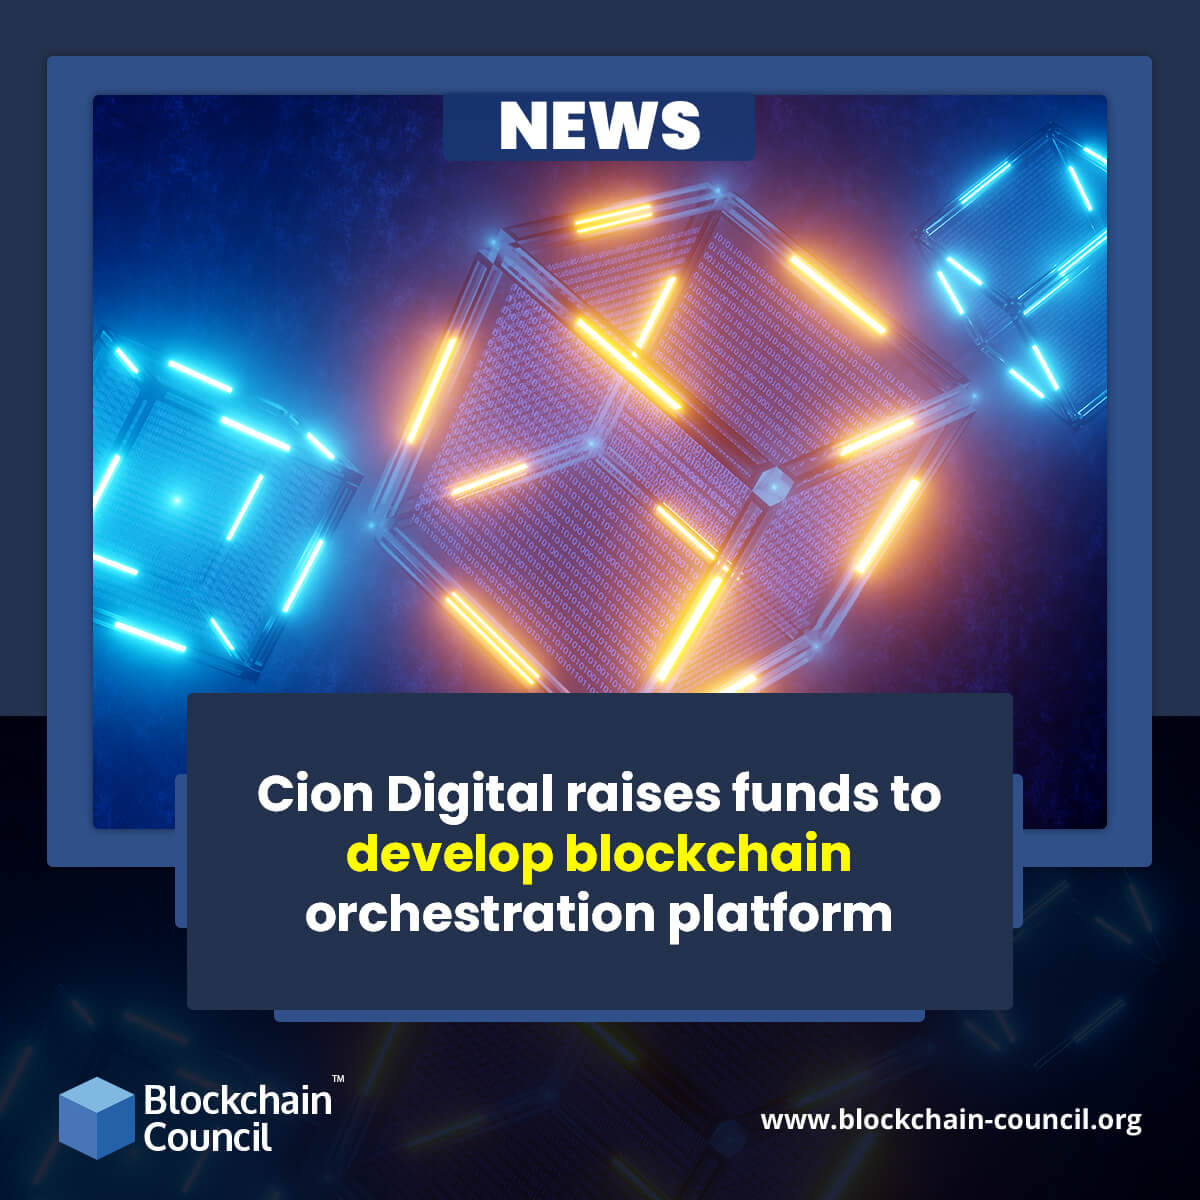 Cion Digital raises funds to develop blockchain orchestration platform